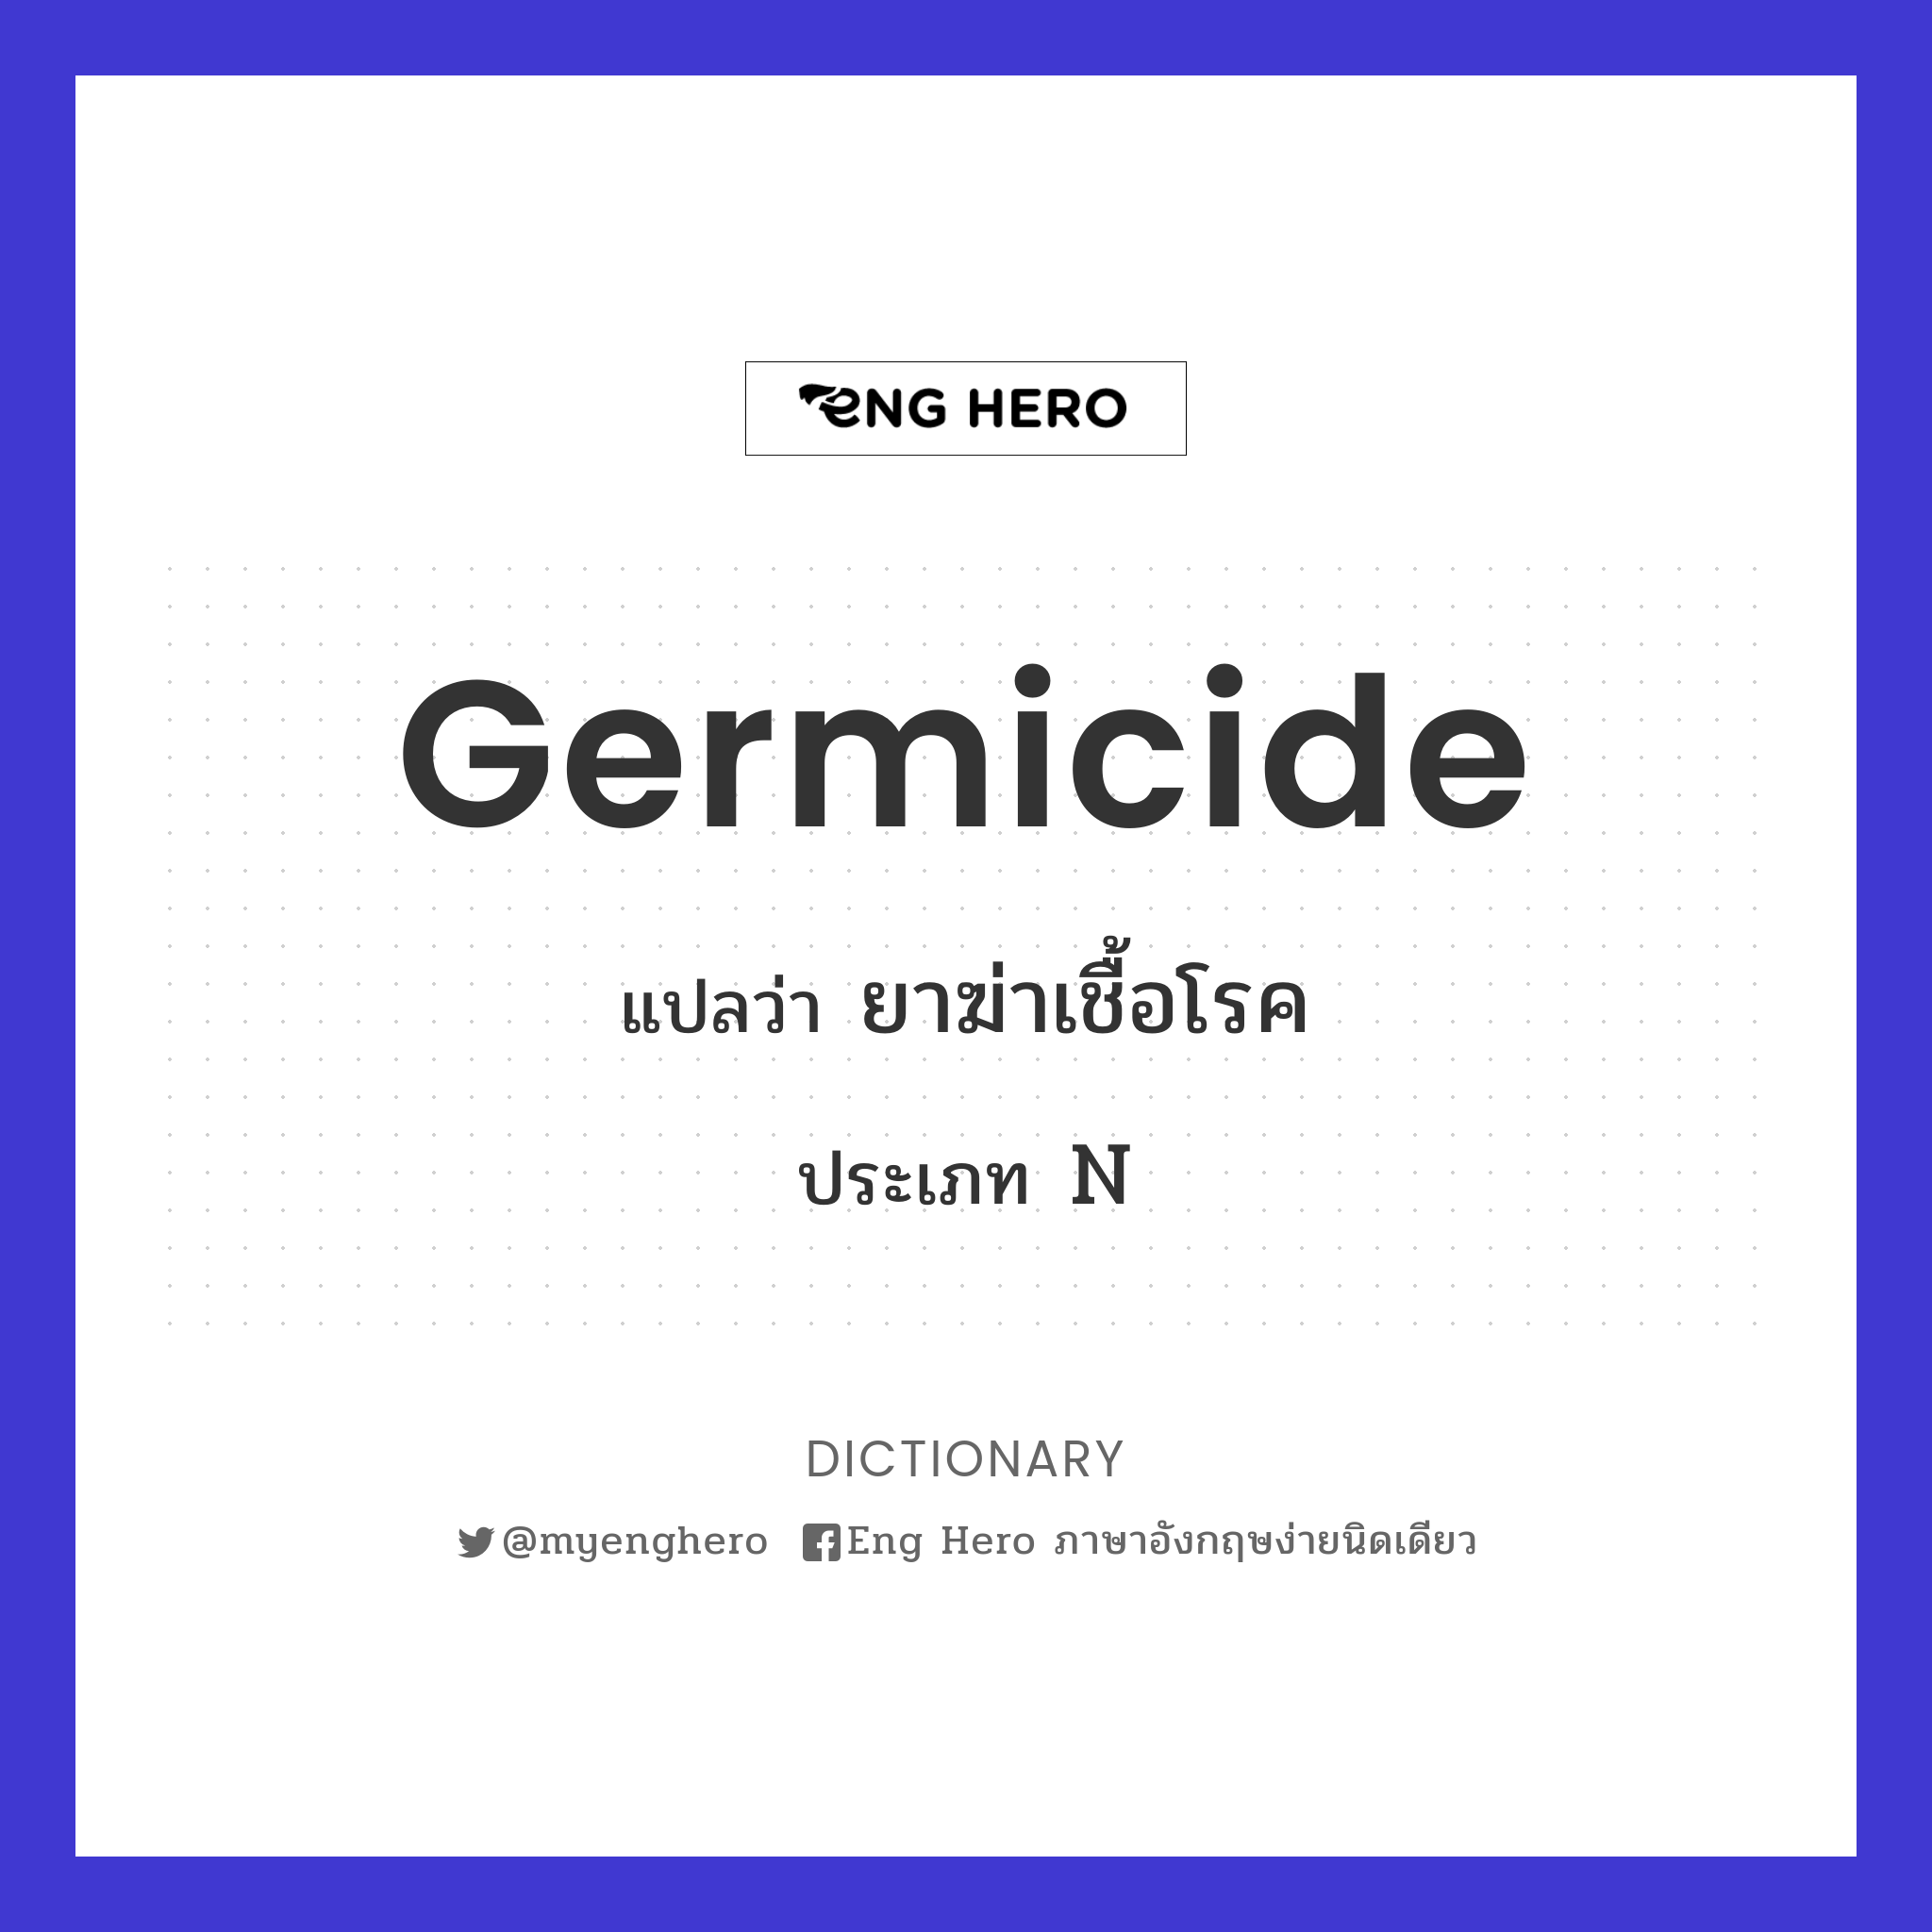 germicide